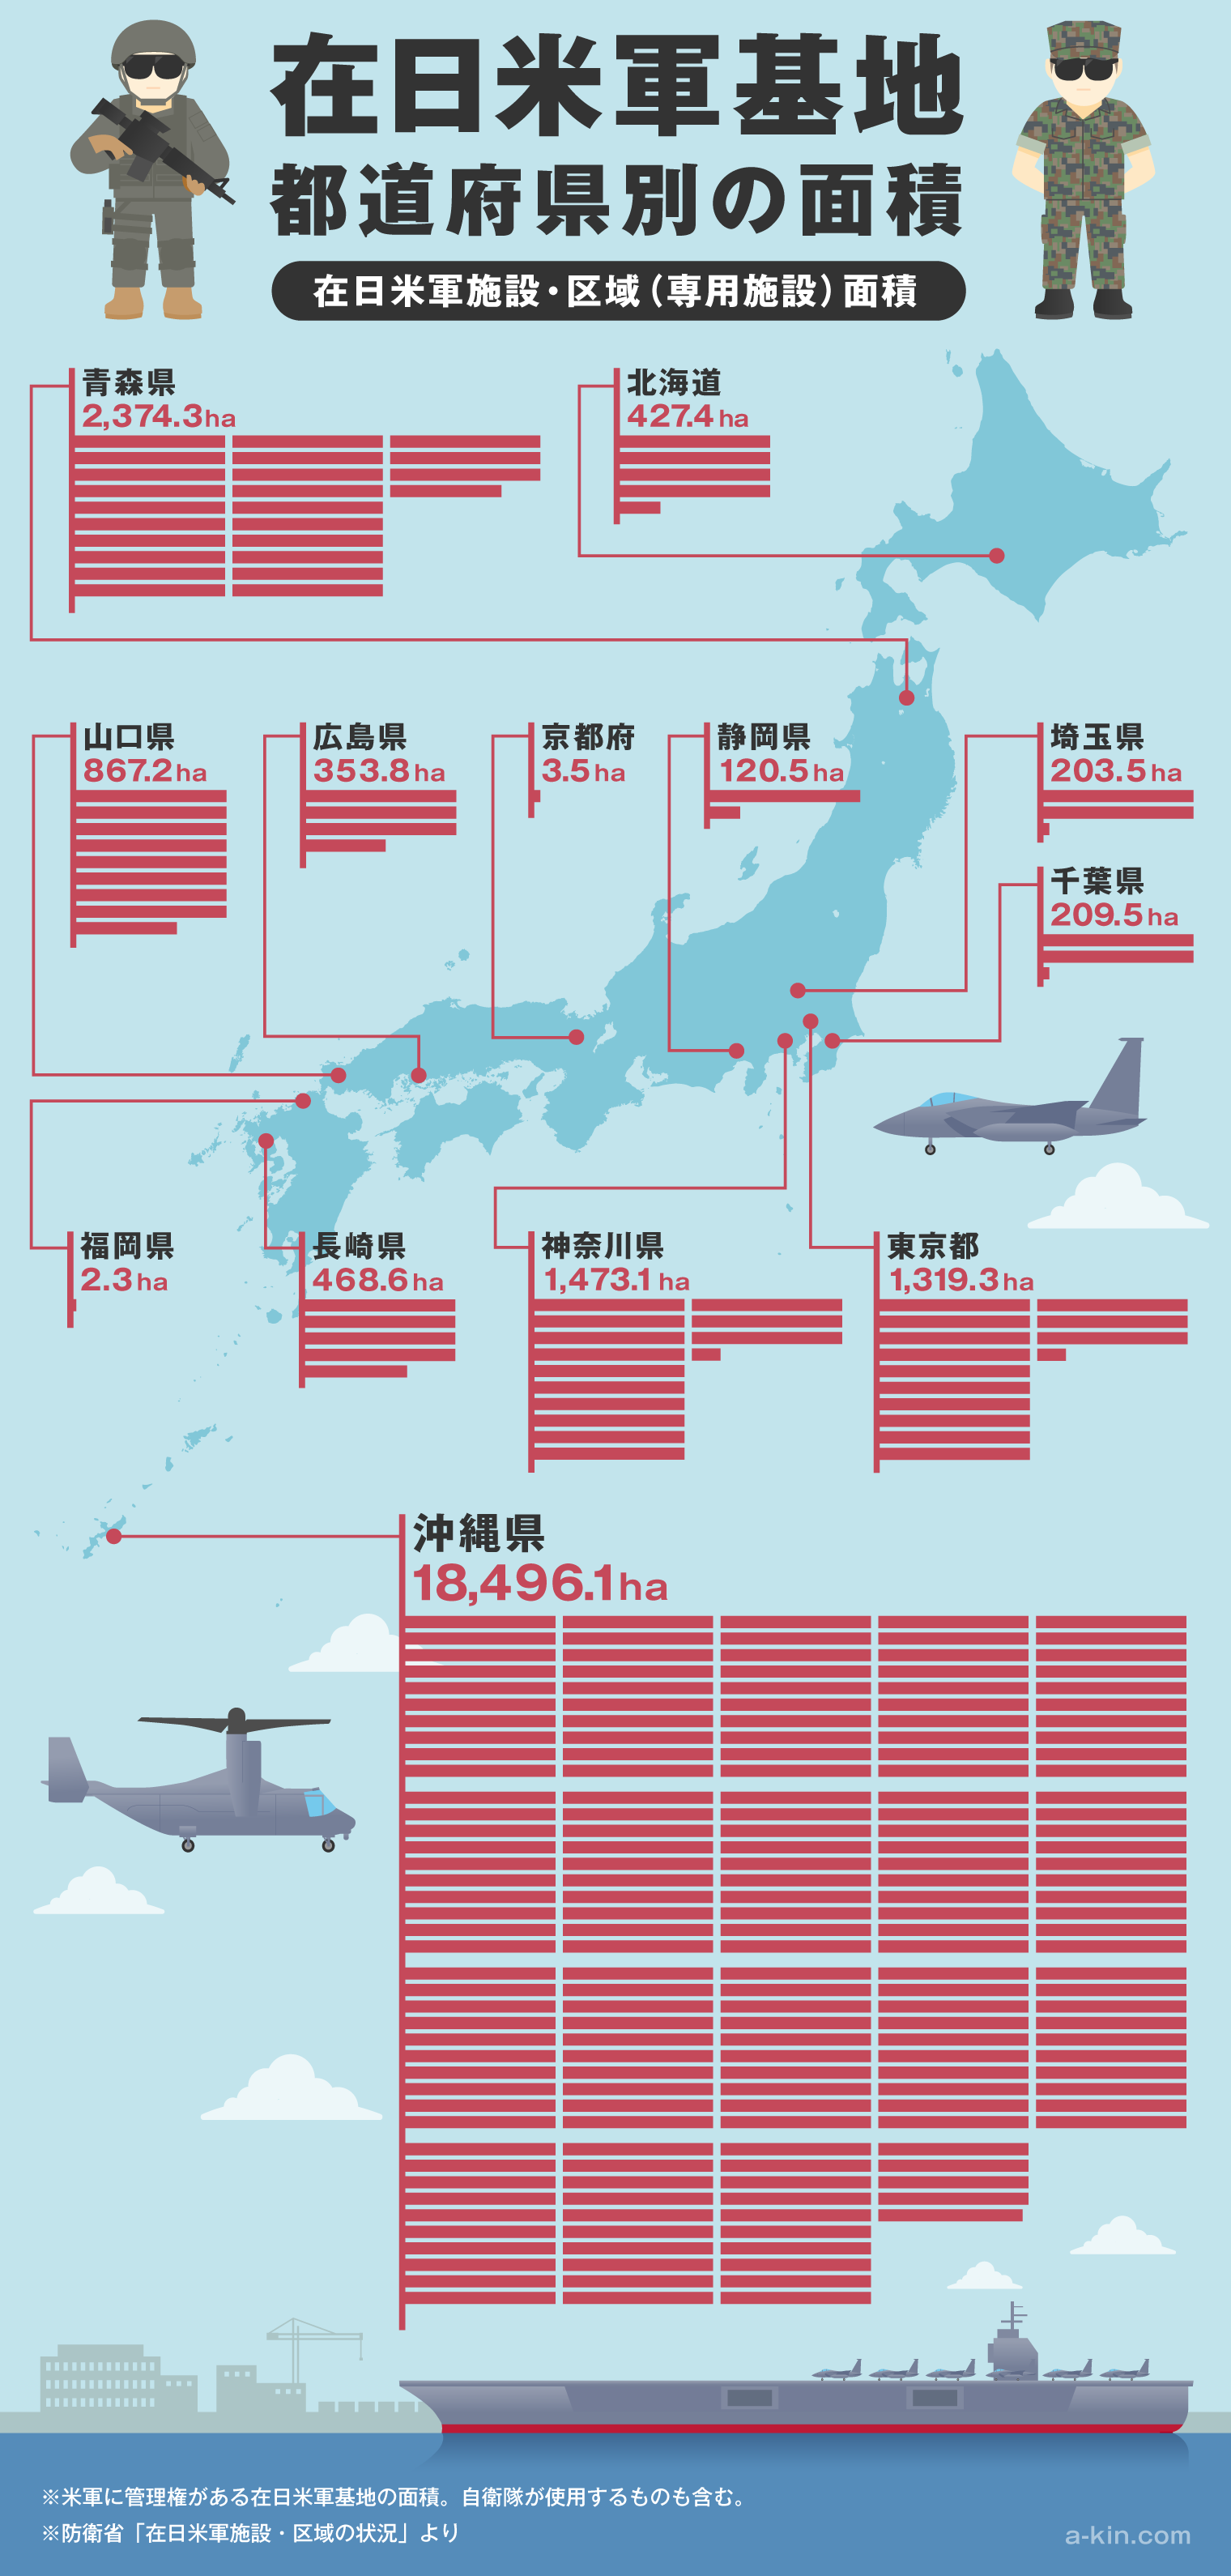 日本全国の在日米軍施設・区域(専用施設)のまとめ　日本の米軍基地（専用施設）の都道府県別面積 一覧　面積は沖縄に70%が集中